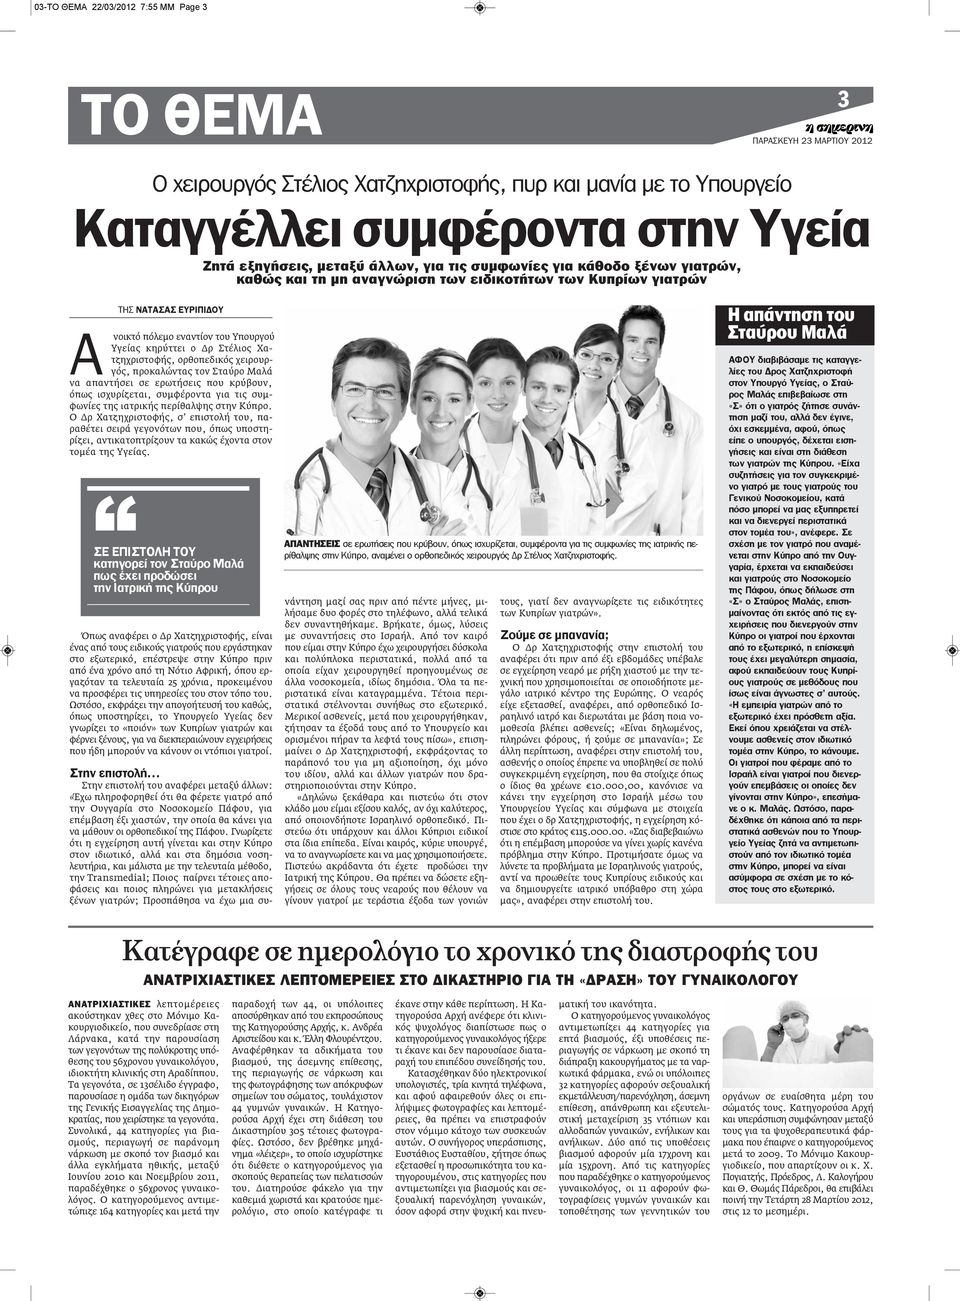 ορθοπεδικός χειρουργός, προκαλώντας τον Σταύρο Μαλά να απαντήσει σε ερωτήσεις που κρύβουν, όπως ισχυρίζεται, συμφέροντα για τις συμφωνίες της ιατρικής περίθαλψης στην Κύπρο.